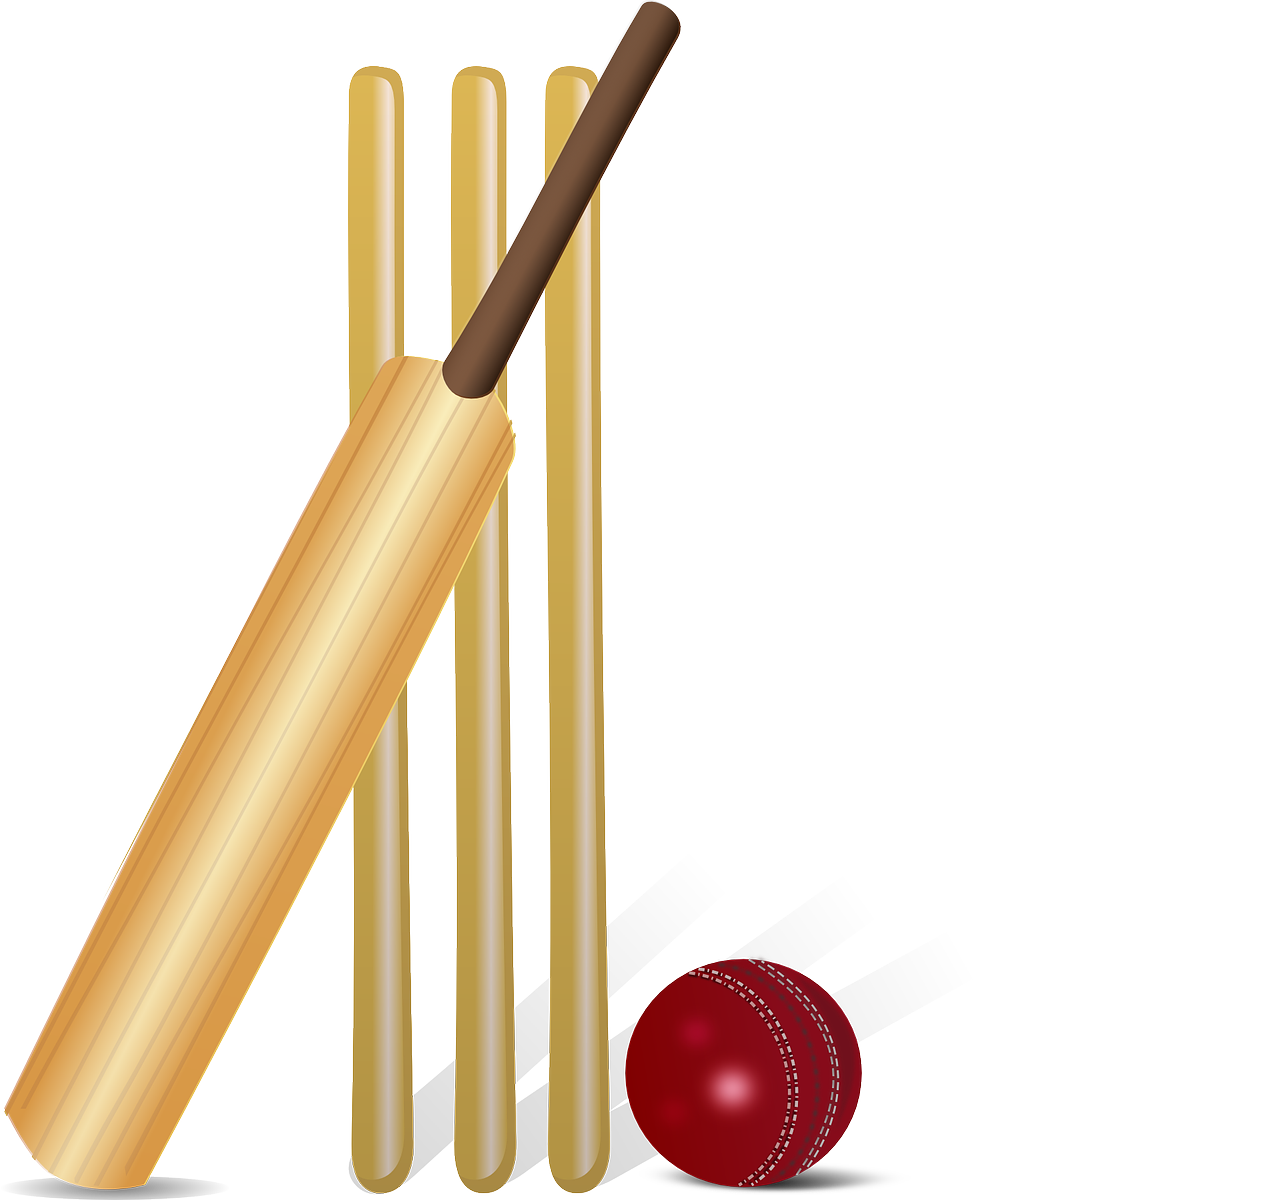 Cricket Bat vector graphic